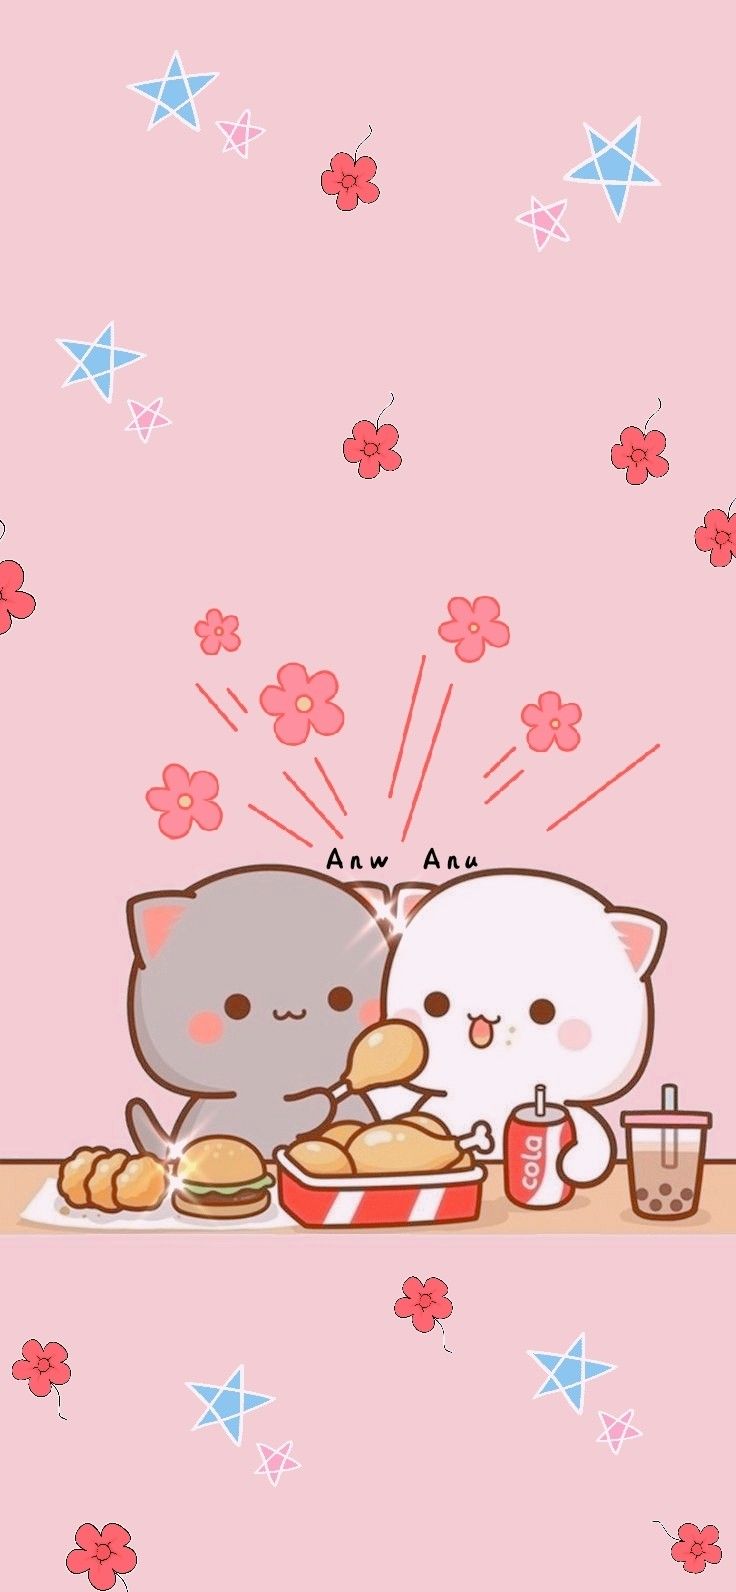 Mochi Mochi Peach Cat and other kawaii characters ideas. chibi cat, cute cartoon image, cute cartoon